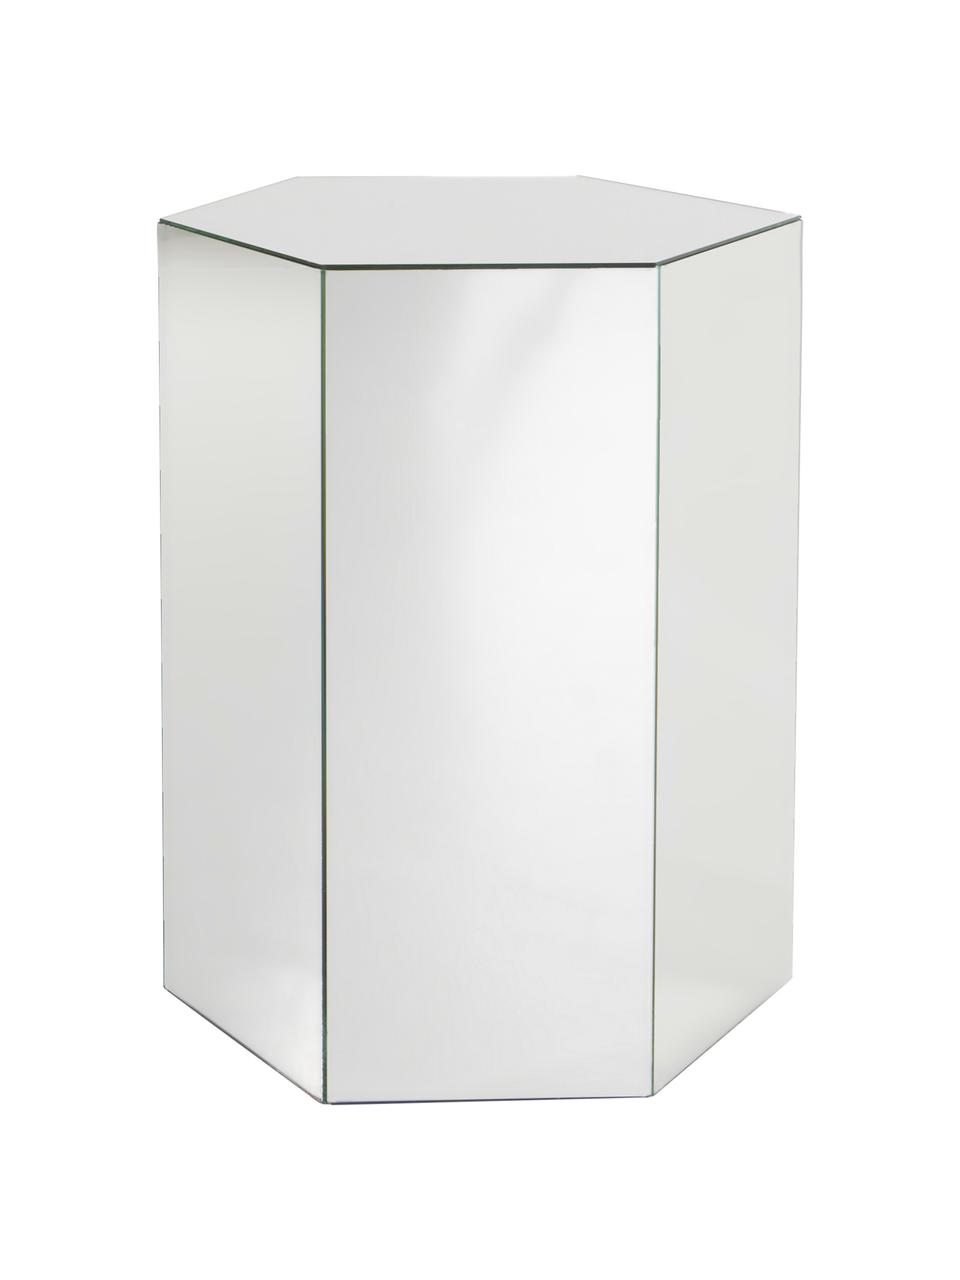 Skleněný odkládací stolek se zrcadlovým efektem Scrape, MDF deska (dřevovláknitá deska střední hustoty), zrcadlo, Zrcadlové sklo, Š 40 cm, V 60 cm